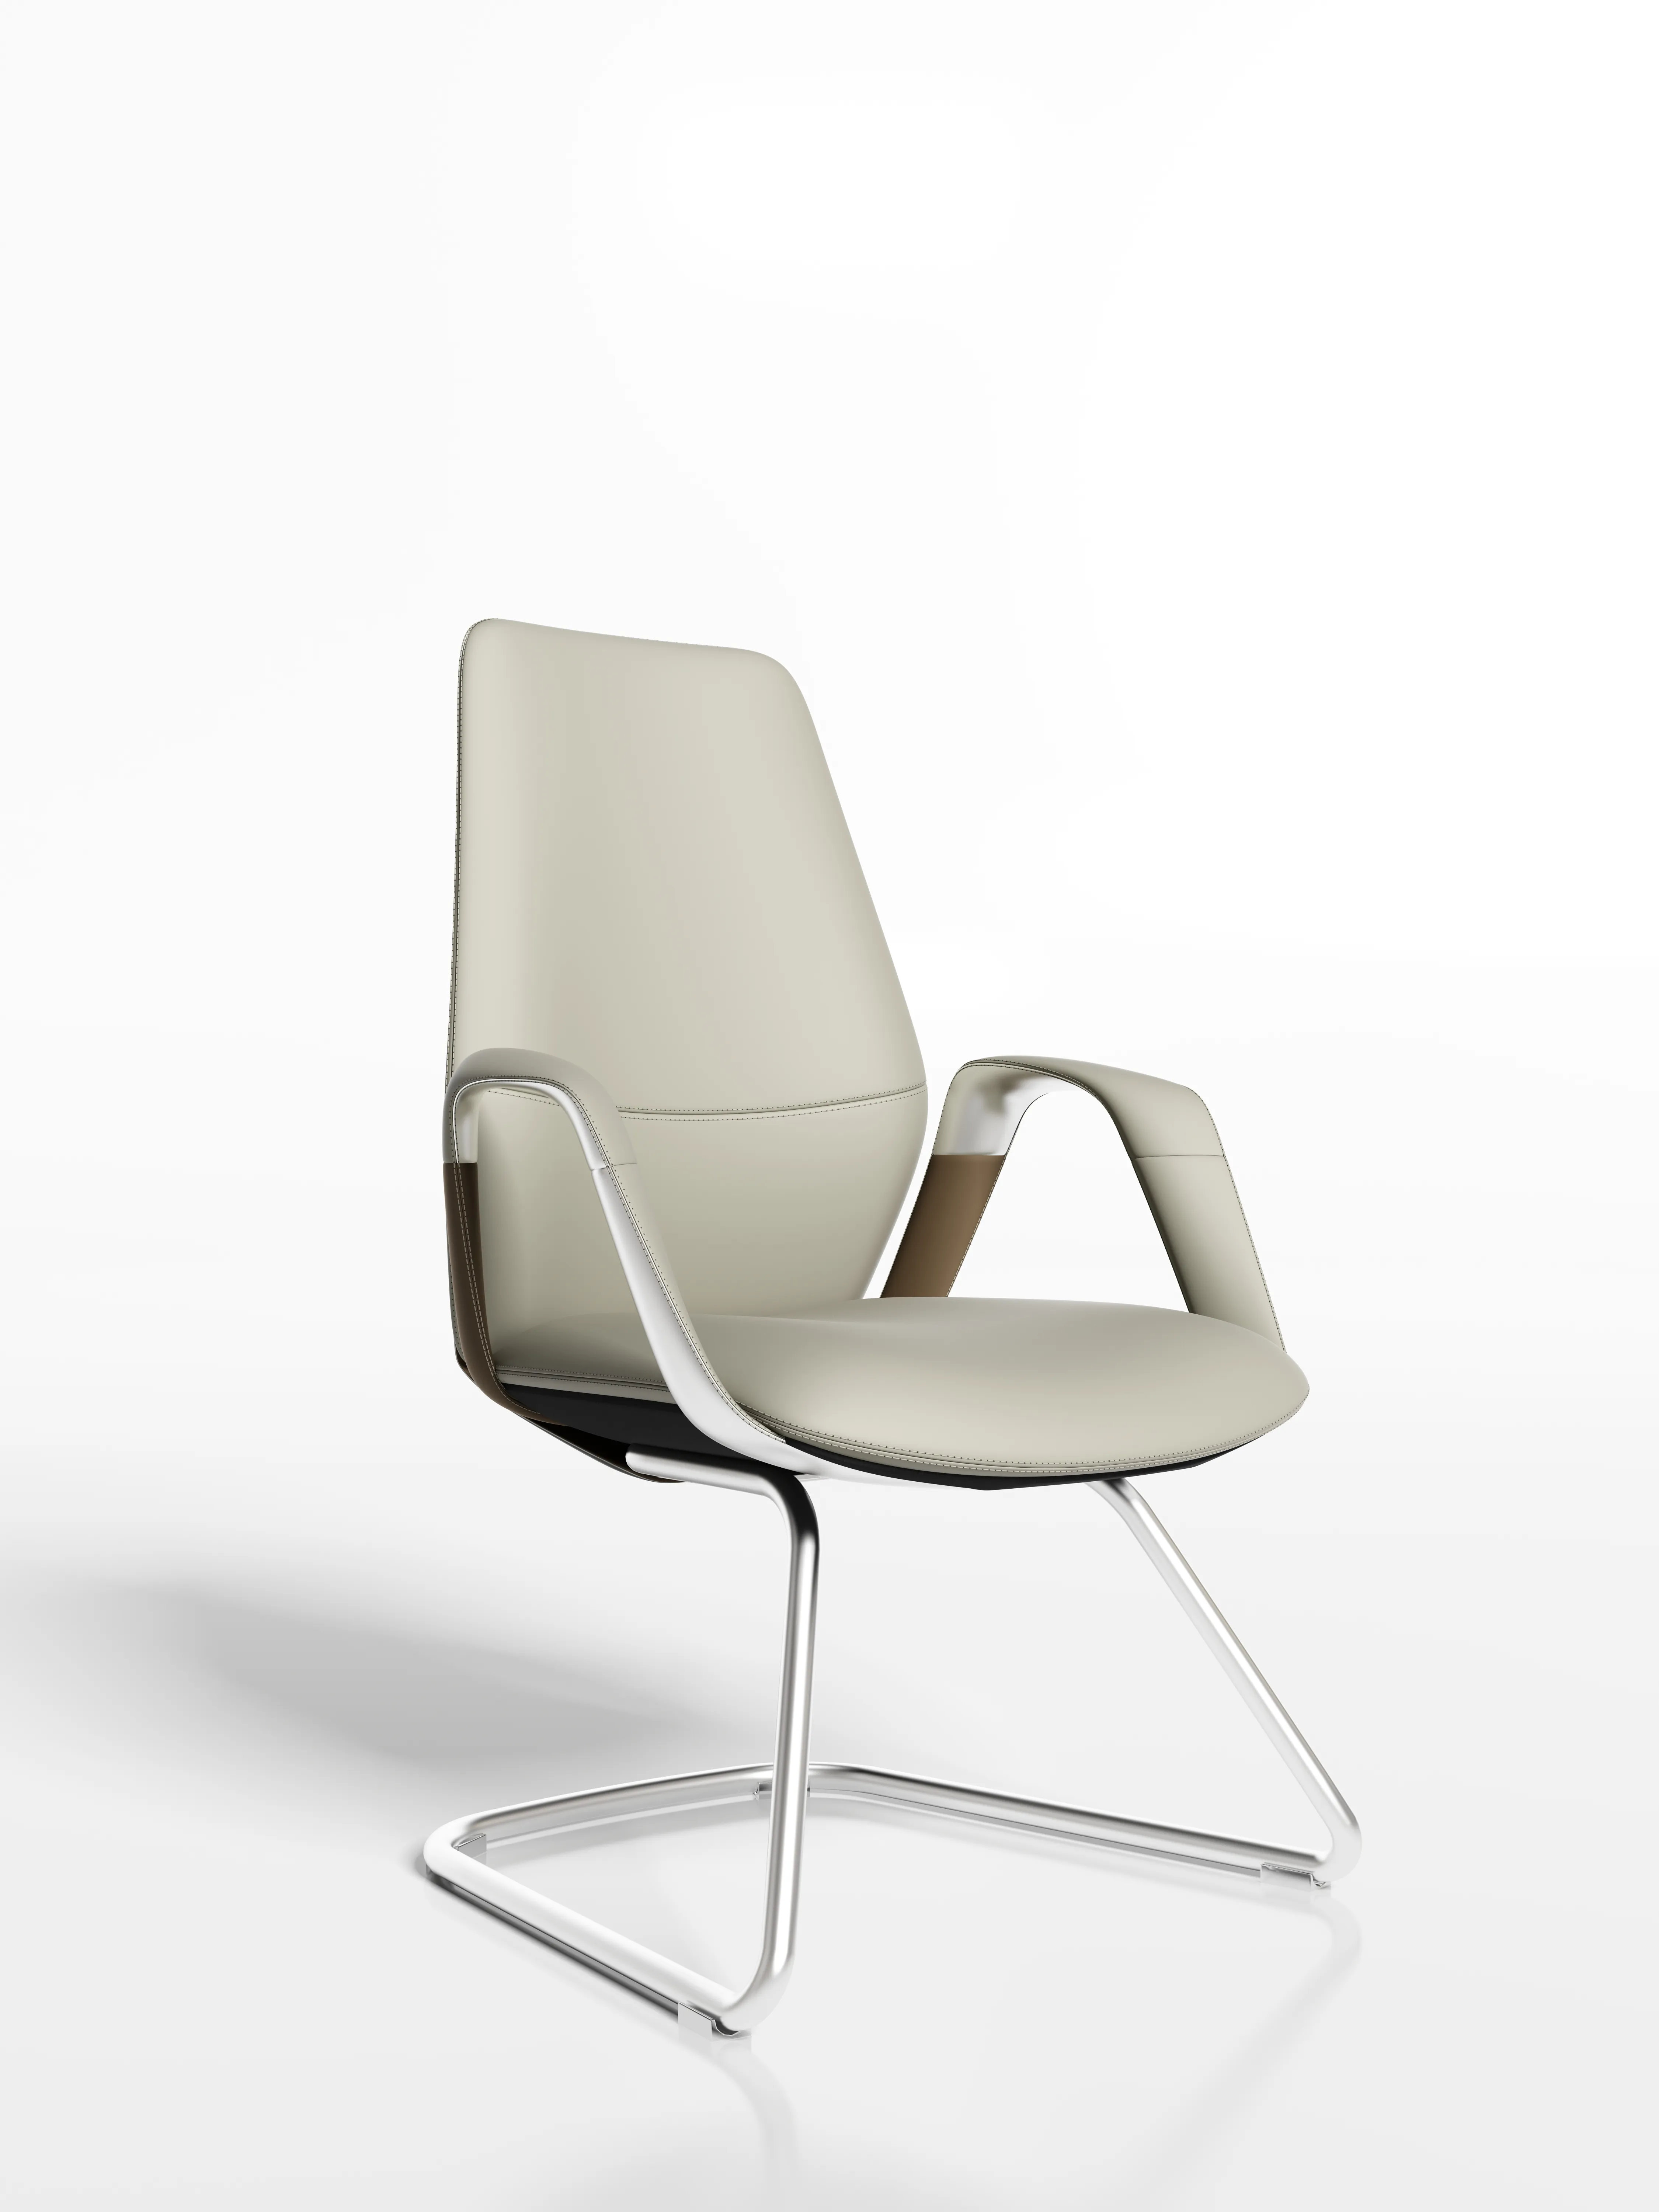 Item H03-A cadeira ceo cadeira de couro de alta qualidade cadeira